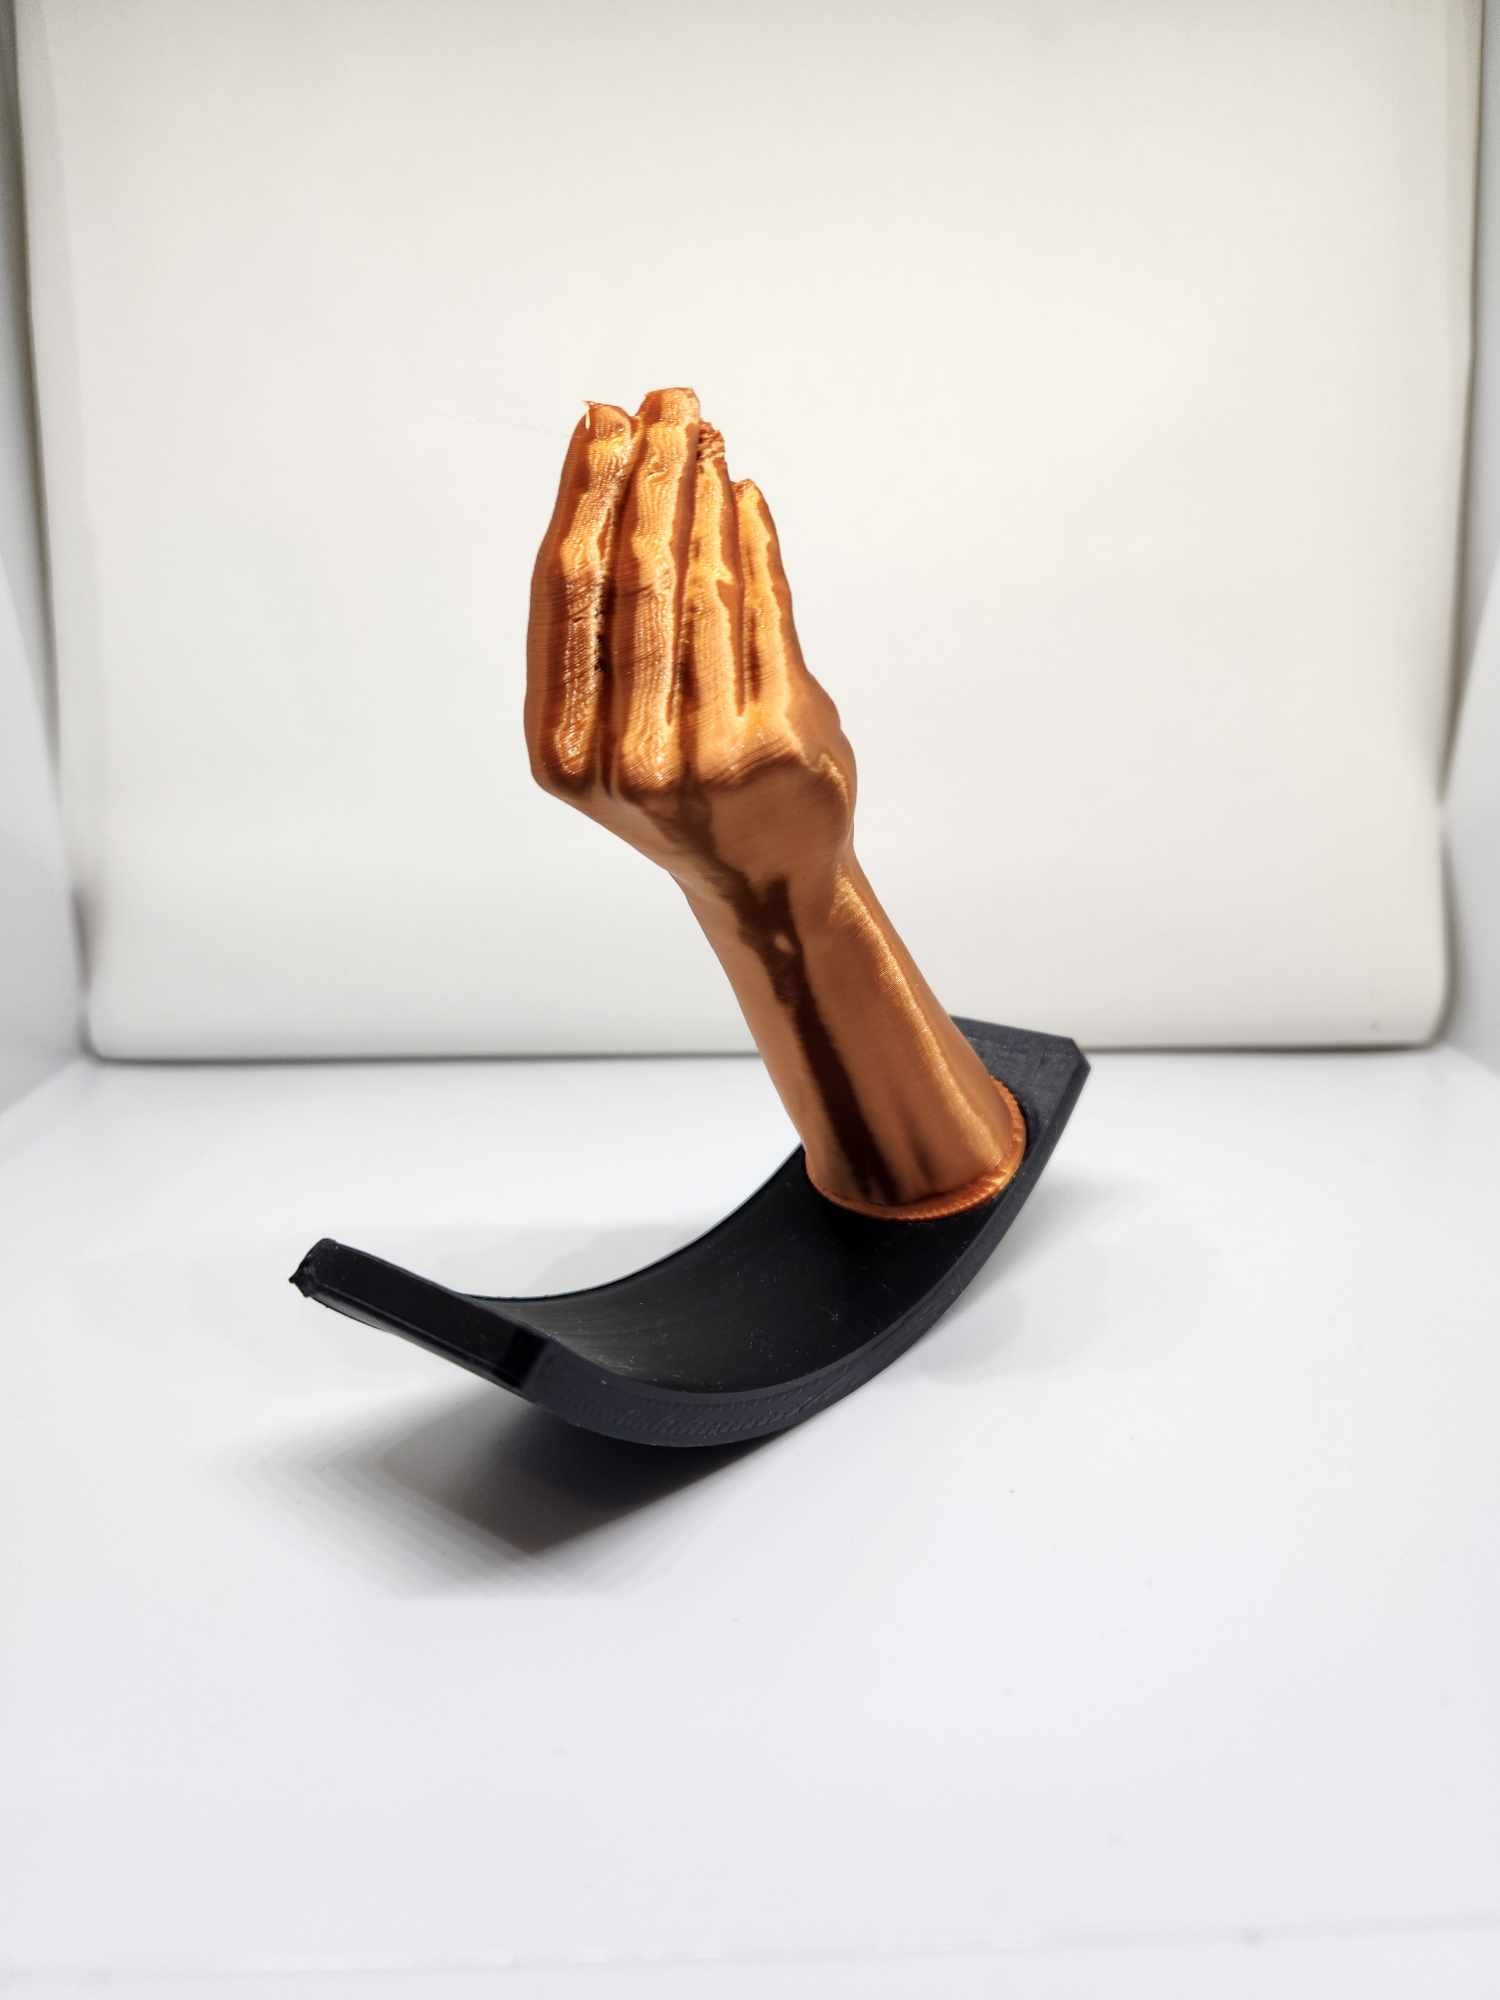 Wackelfigur Italienische Handgeste Italian,Gesture,Gesto,Wobbler